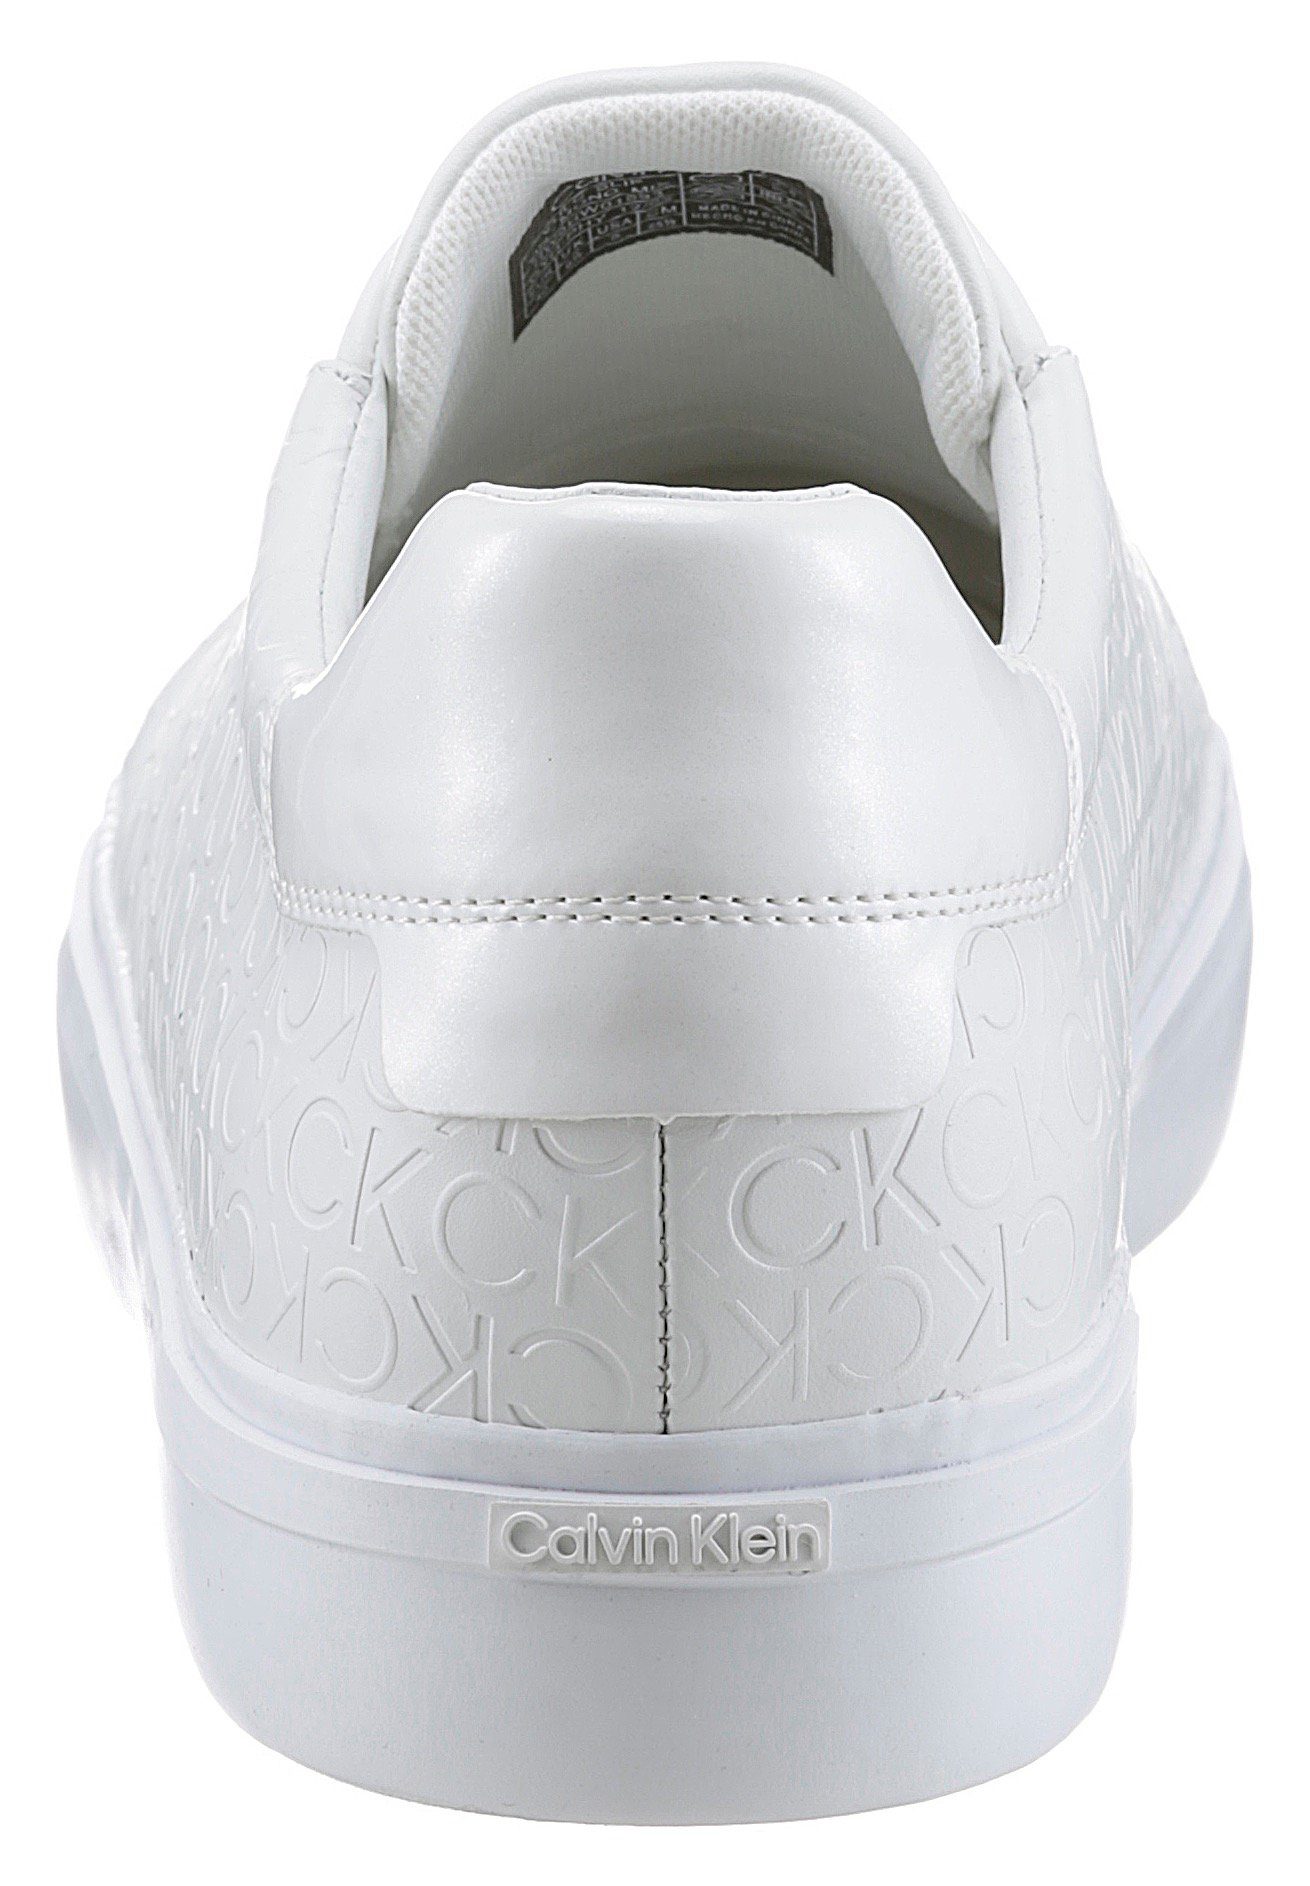 MIX Klein Calvin VULC MONO Gummiband ON mit SLIP - weiß Slip-On Sneaker